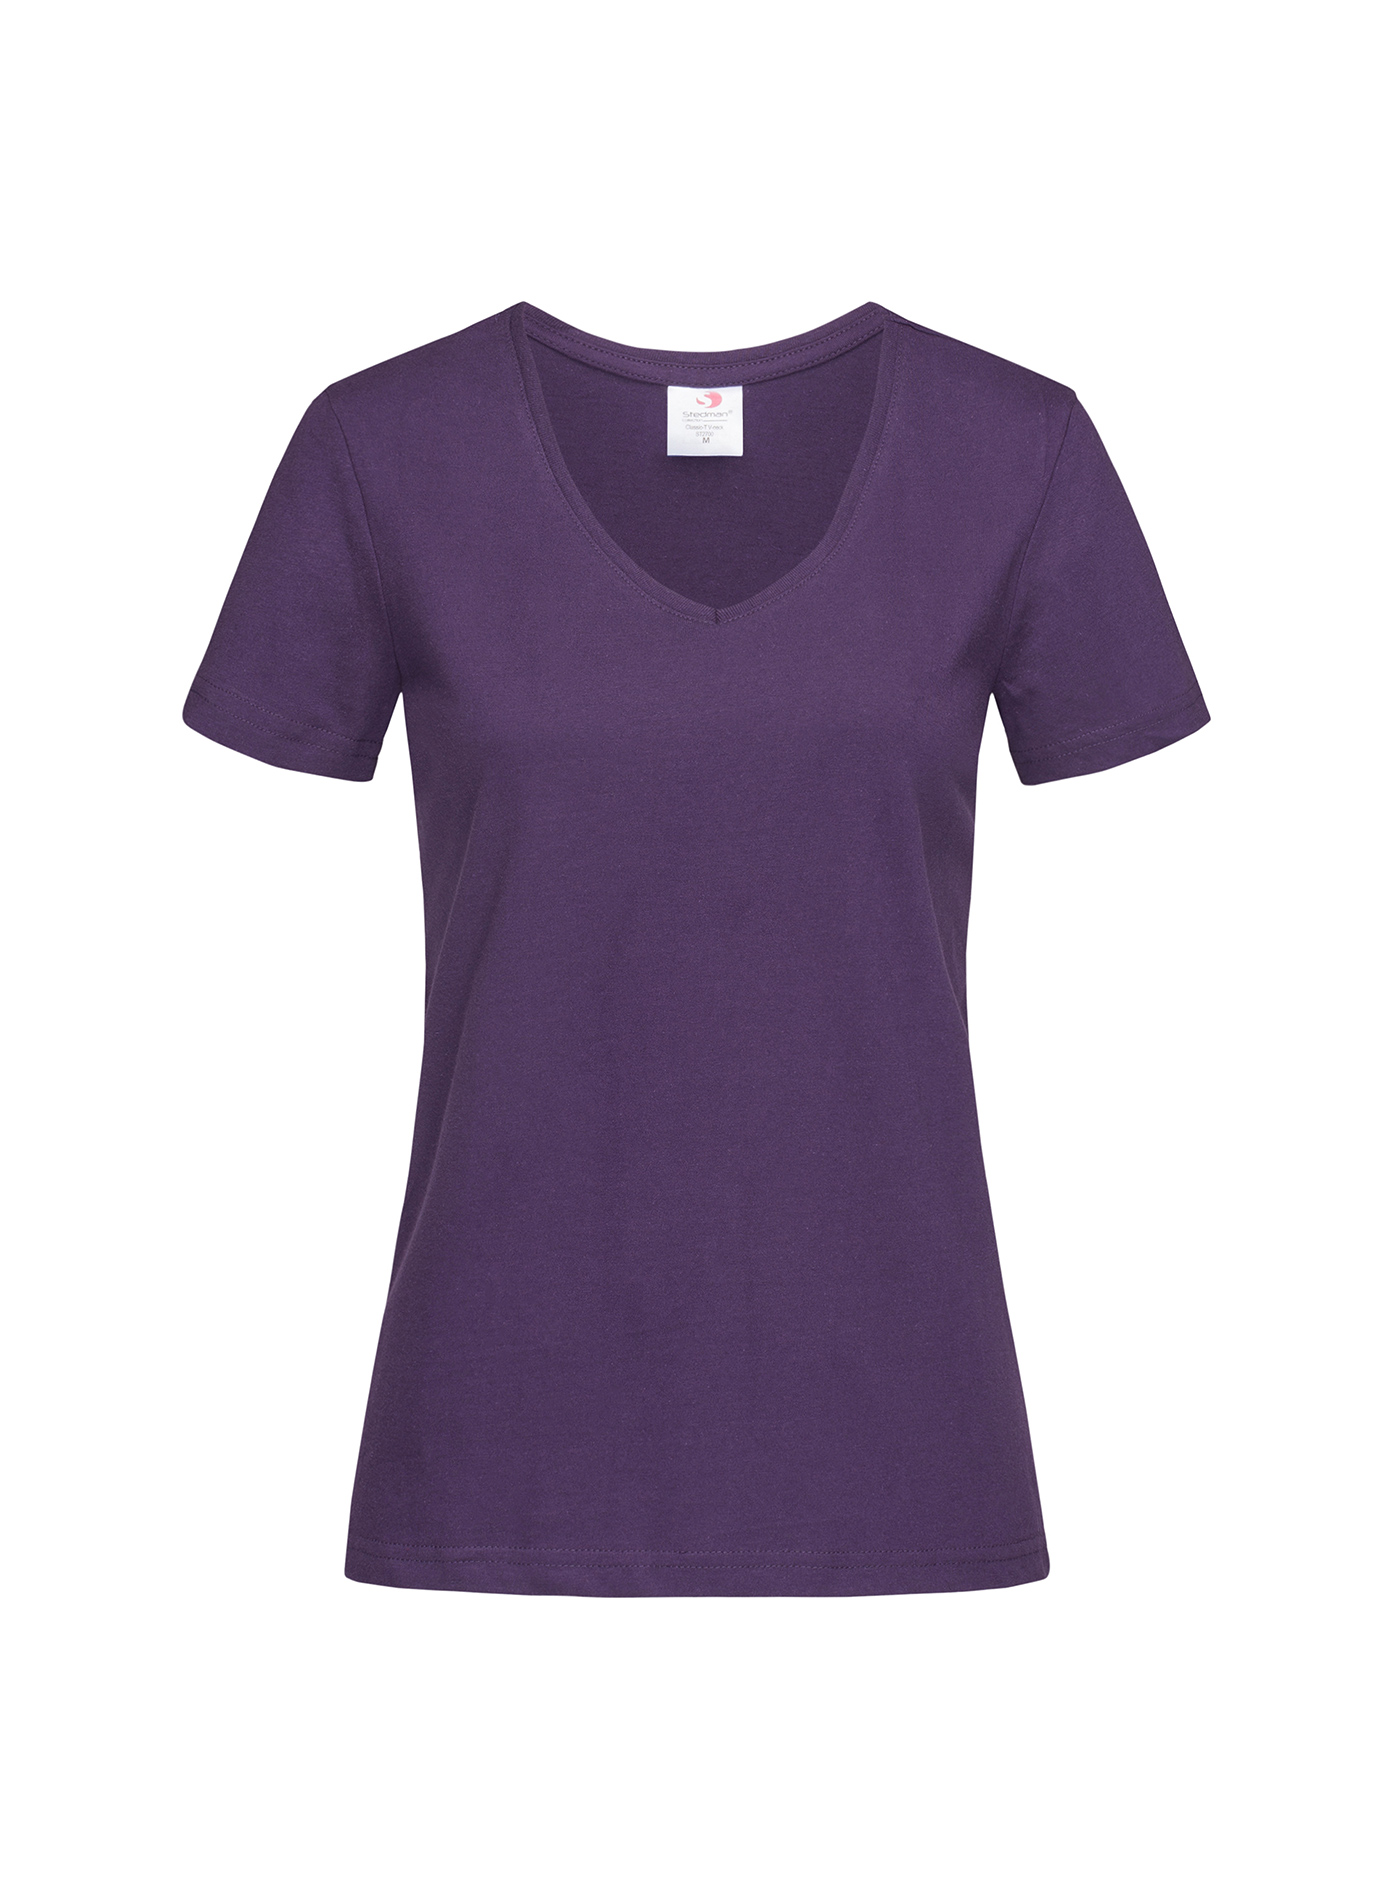 Dámské tričko s V-výstřihem Stedman - Tmavě fialová L